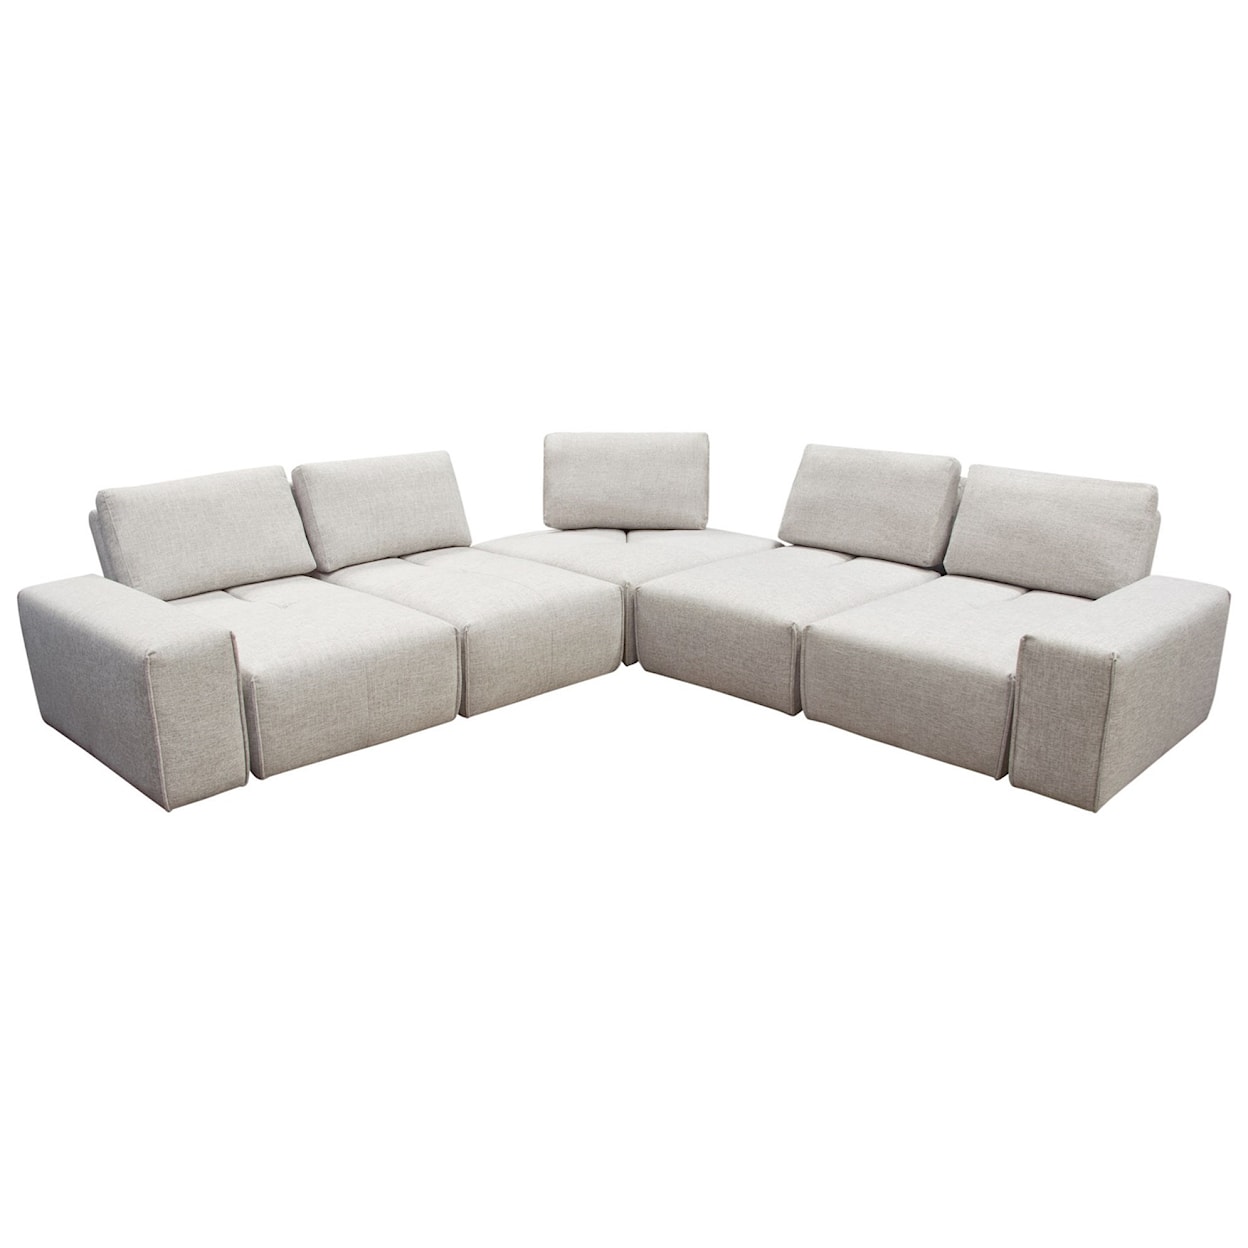 Diamond Sofa Furniture Jazz Modular Sectional